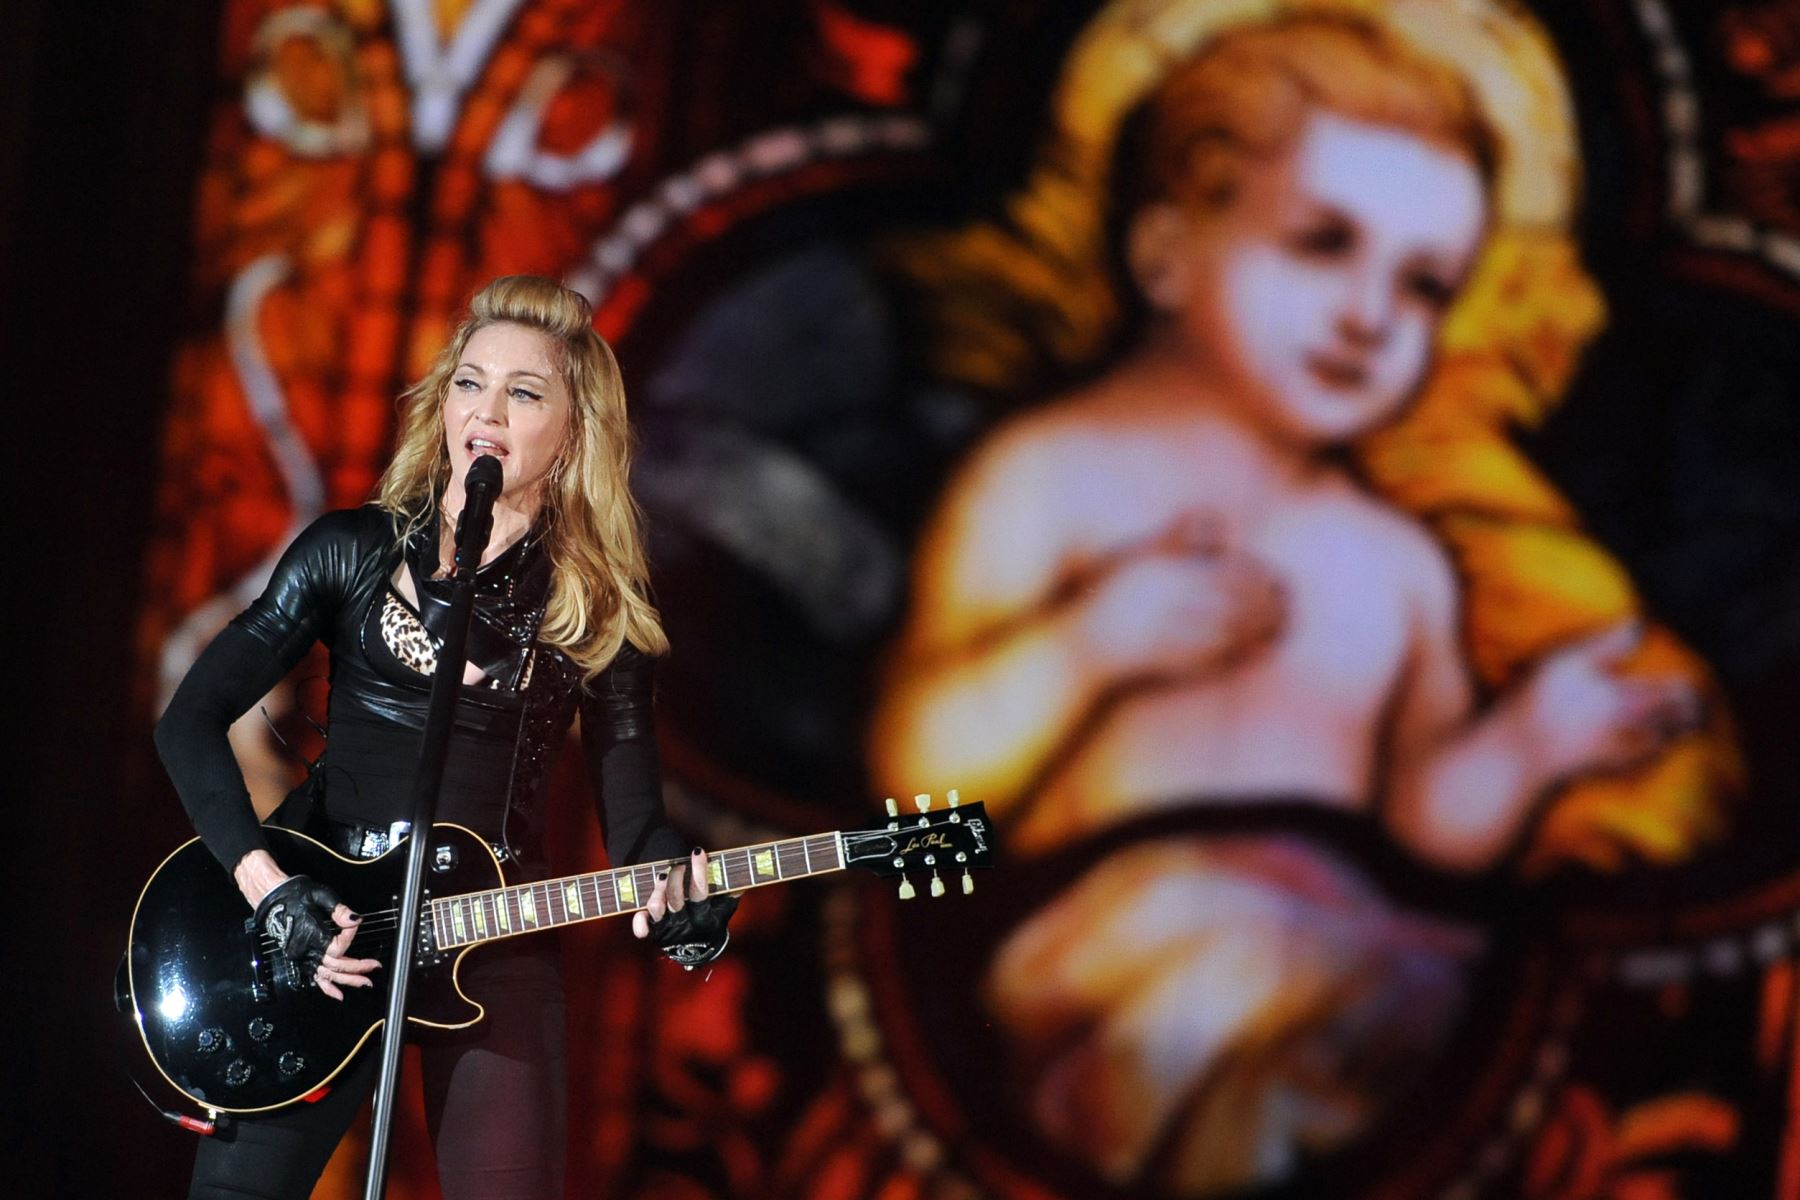 La cantante estadounidense Madonna se presenta durante un concierto en el mundo de 02 el 28 de junio de 2012 en Berlín como parte de su gira MDNA 2012
AFP